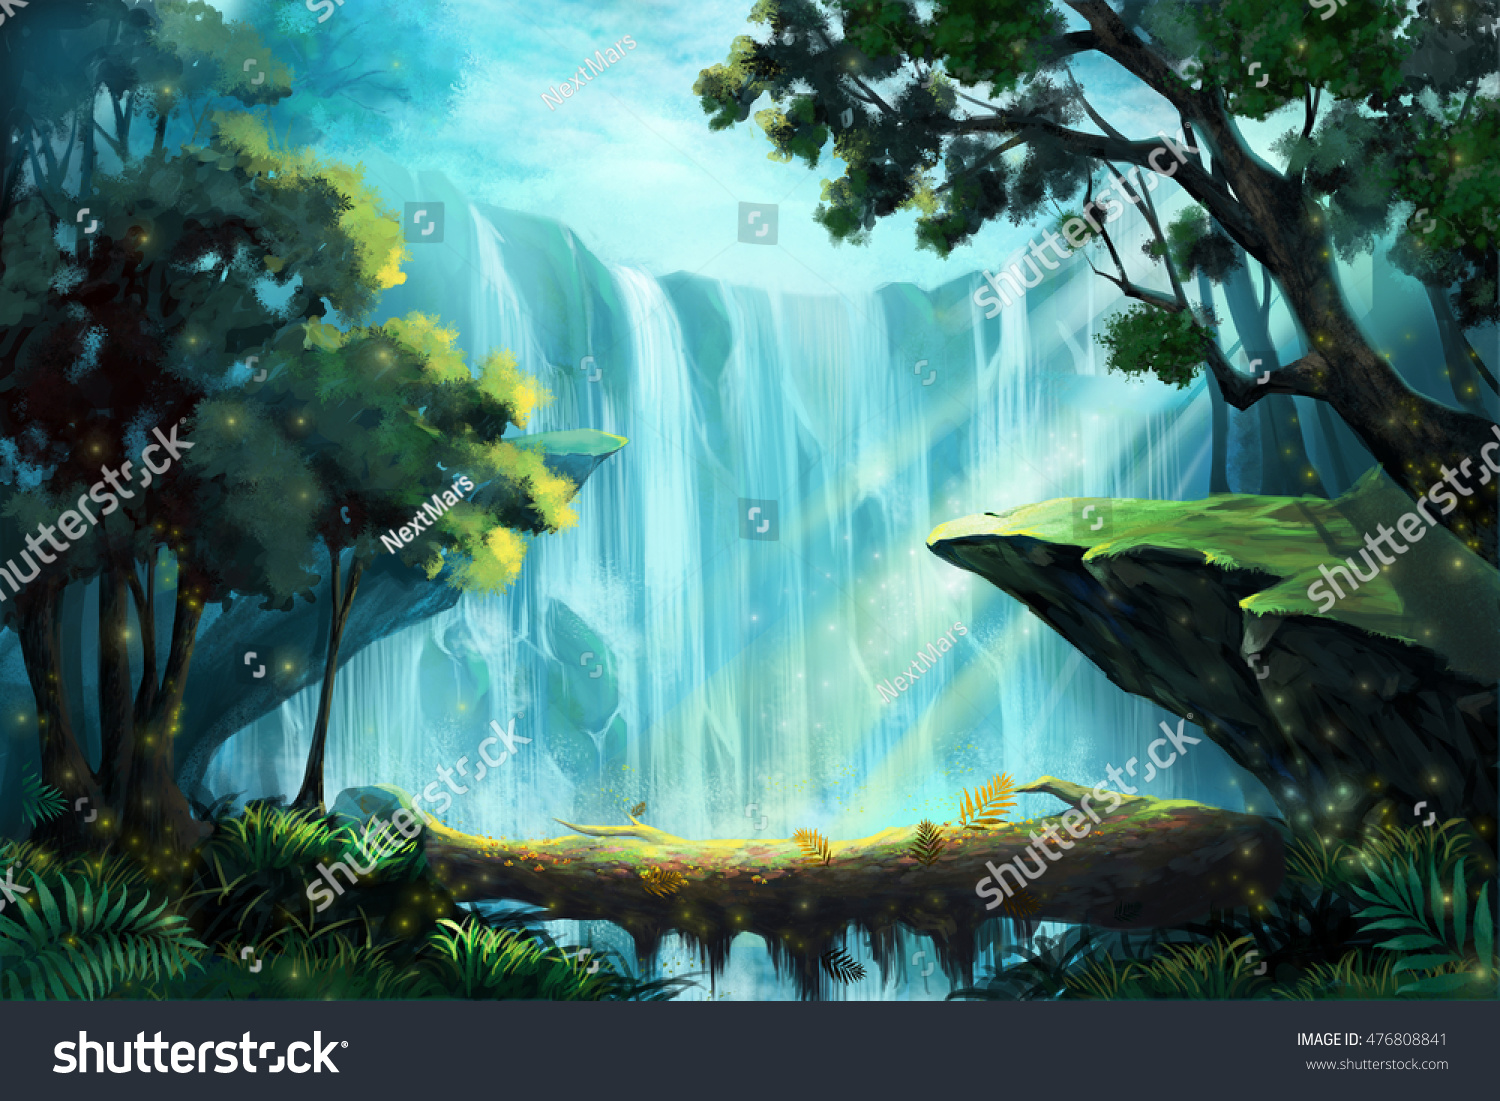 滝の近くの深い森の中の木造の橋 ビデオゲームのデジタルcgアートワーク コンセプトイラスト リアルな漫画スタイルの背景 のイラスト素材